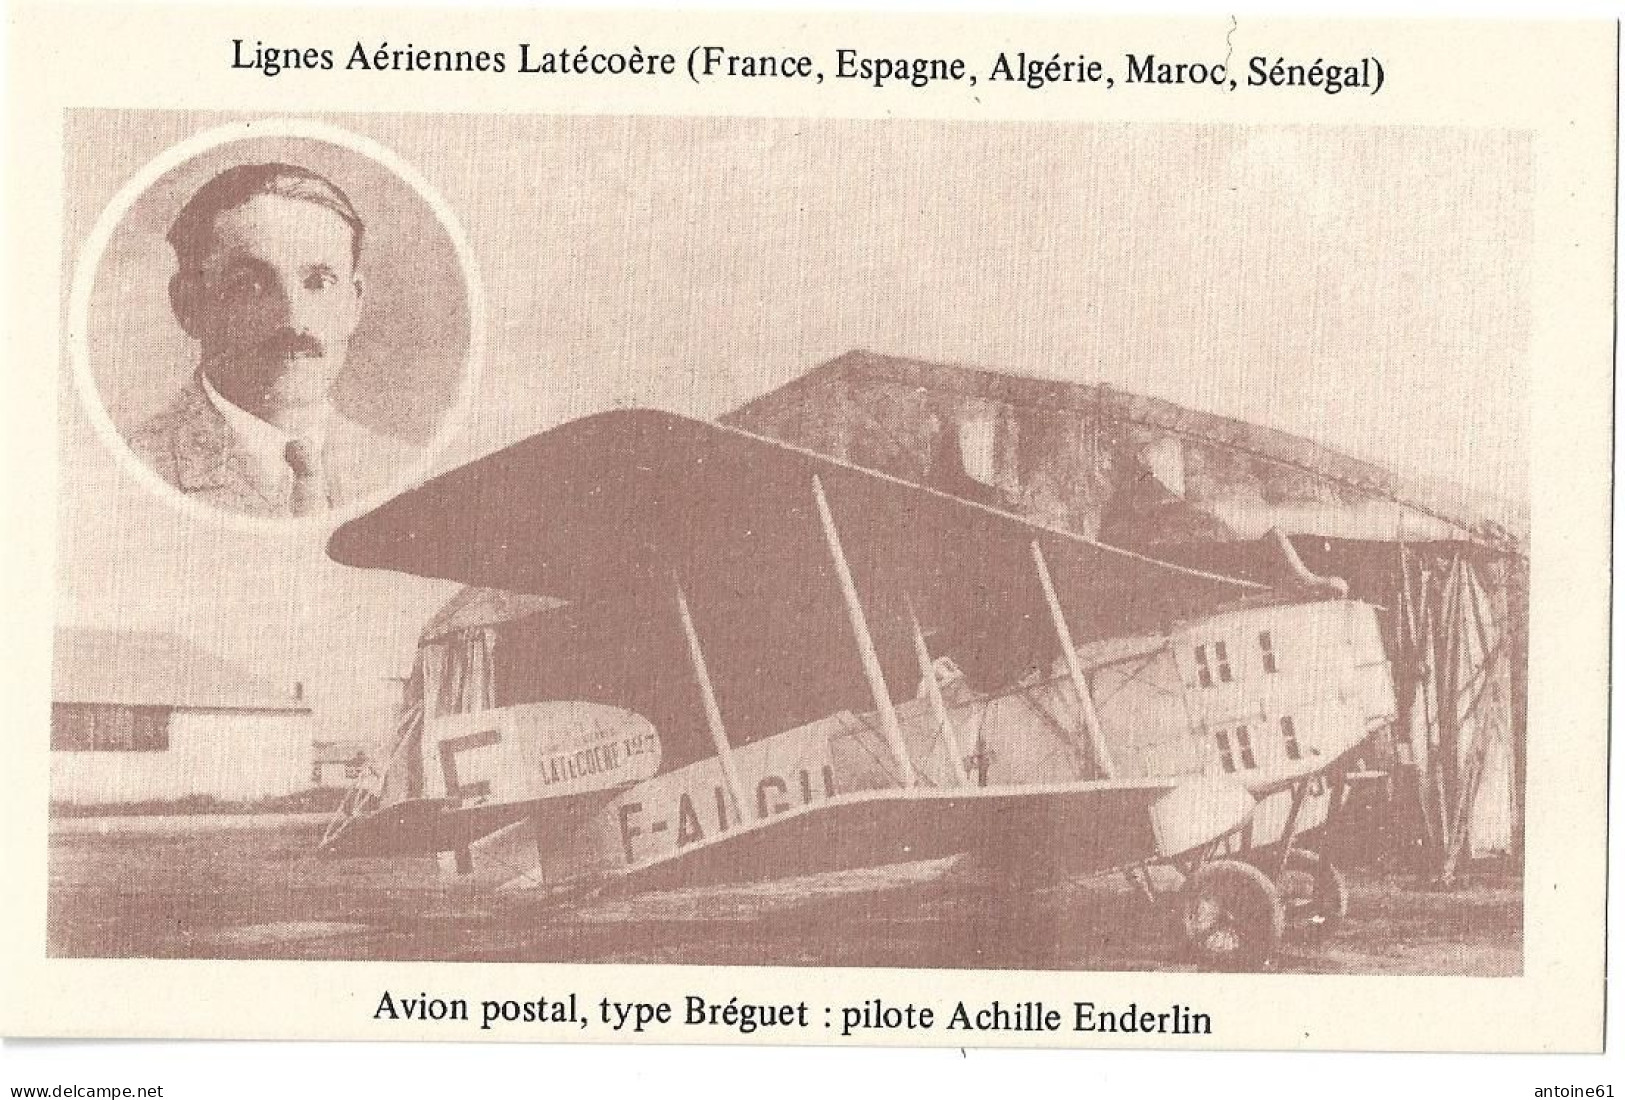 LIGNES AÉRIENNES LATÉCOERE  - AVION POSTAL, TYPE BREGUET - Pilote : Achille ENDERLIN - Aviateurs